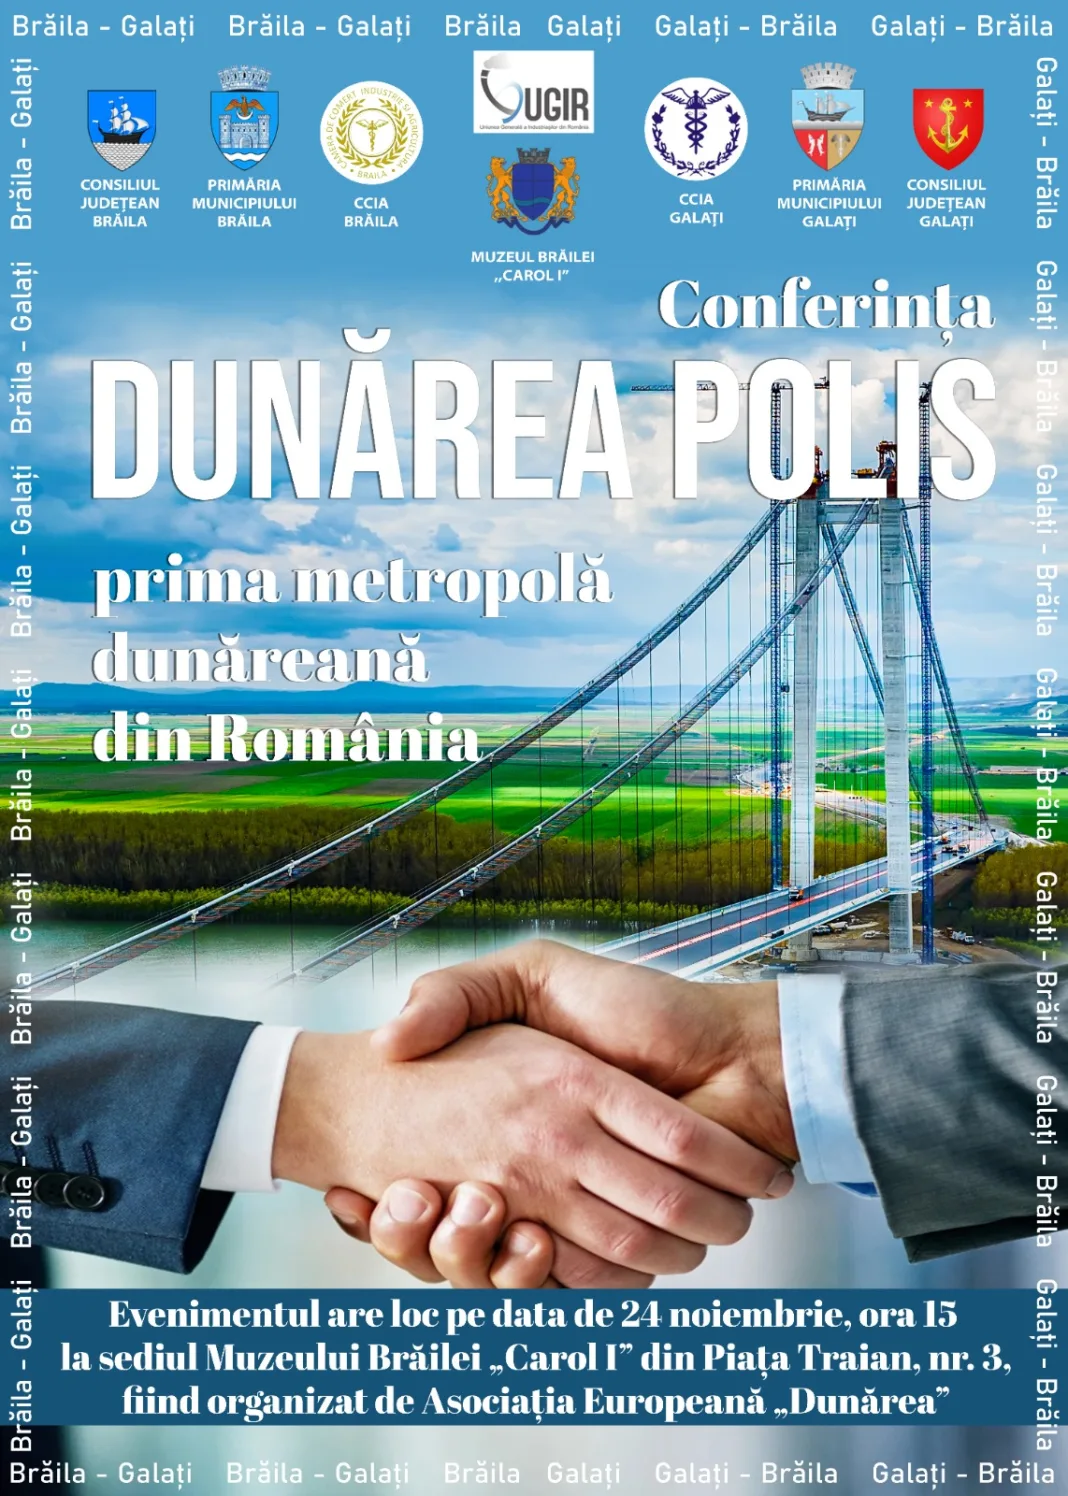 Proiectul “Dunărea Polis”, prima metropolă dunăreană, prinde contur la Brăila